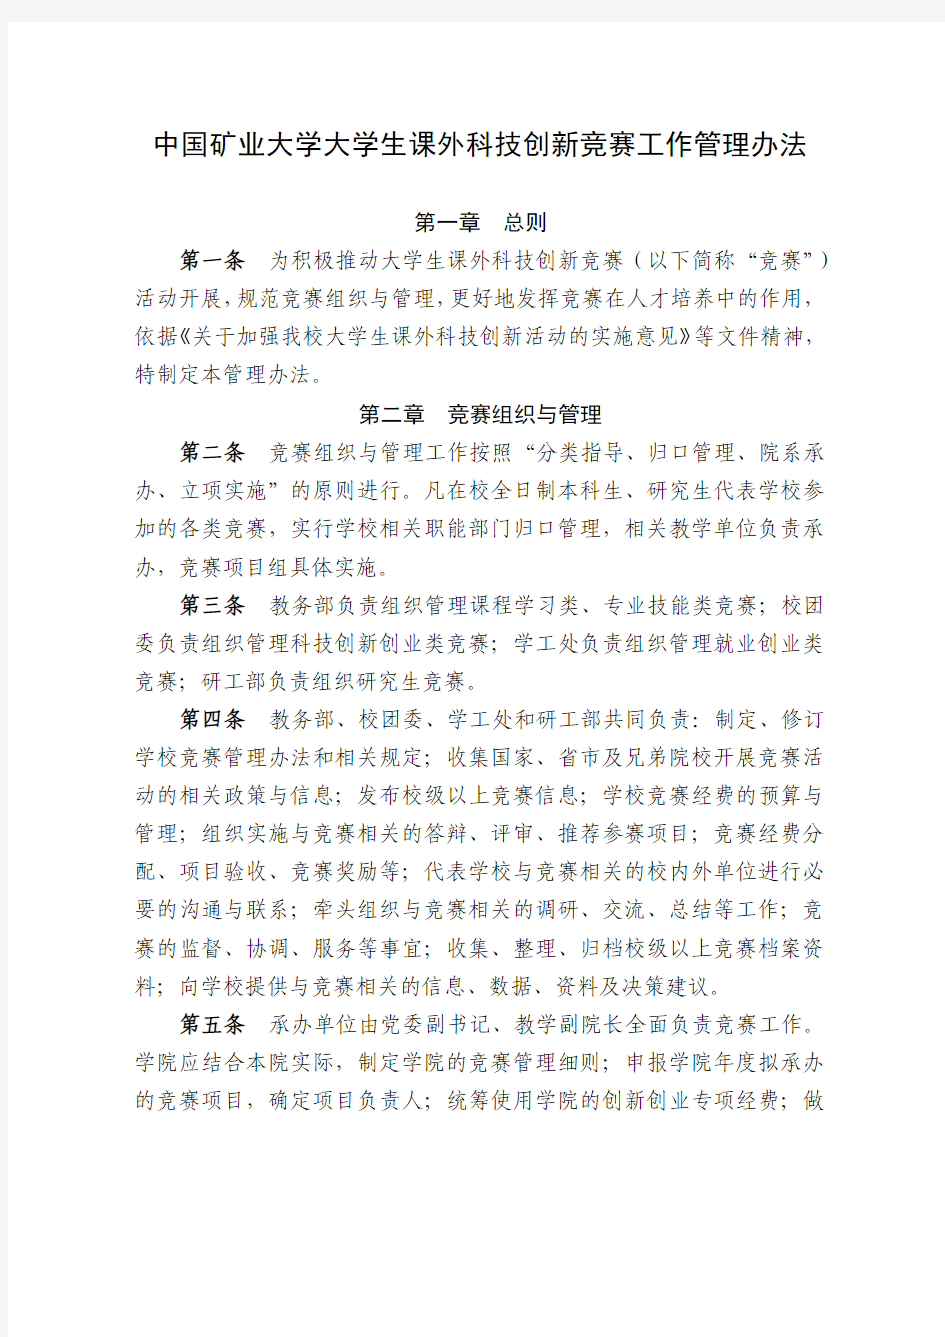 中国矿业大学大学生课外科技创新竞赛工作管理办法